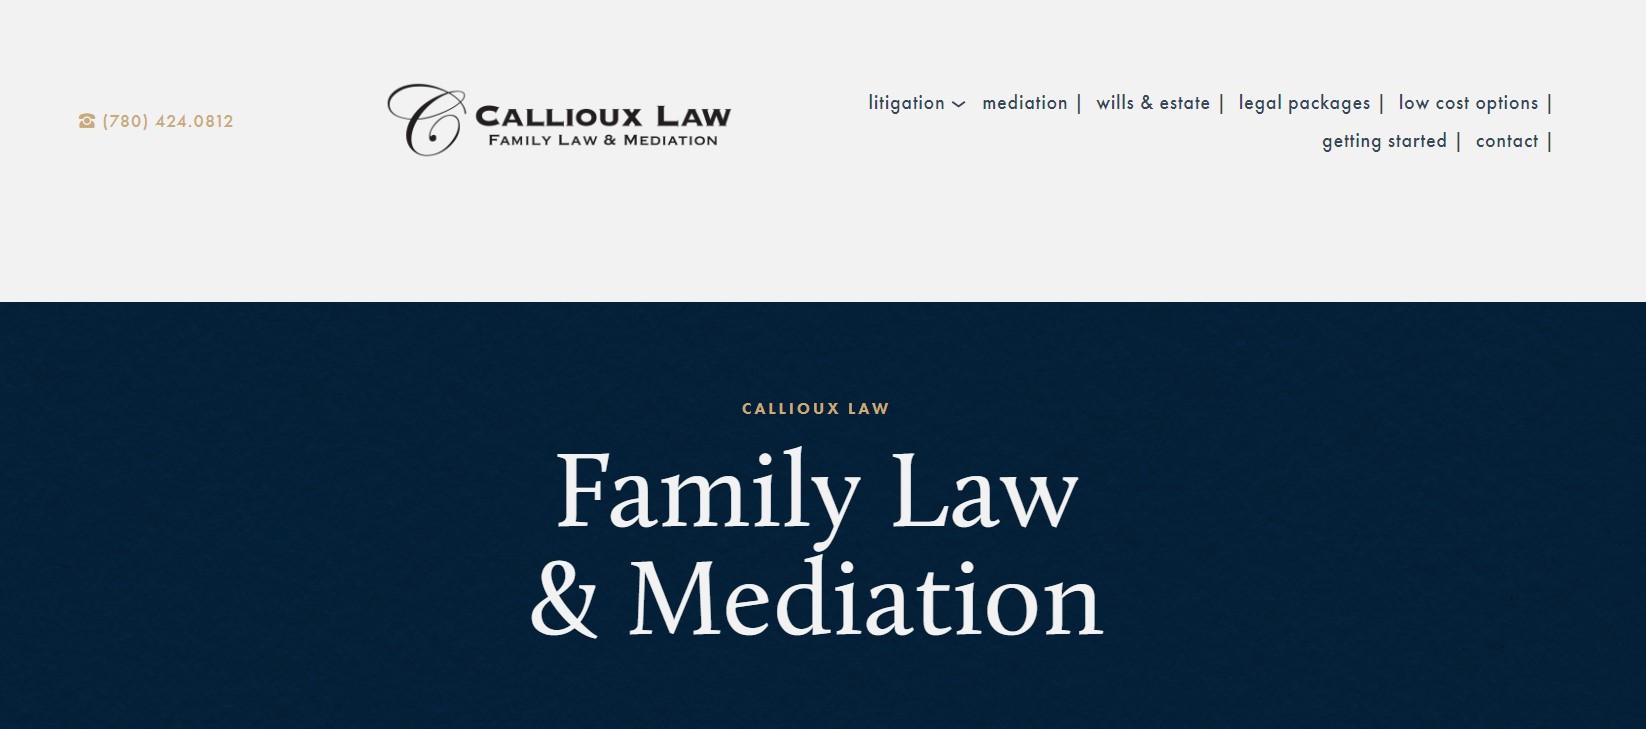 callioux law mediator in edmonton